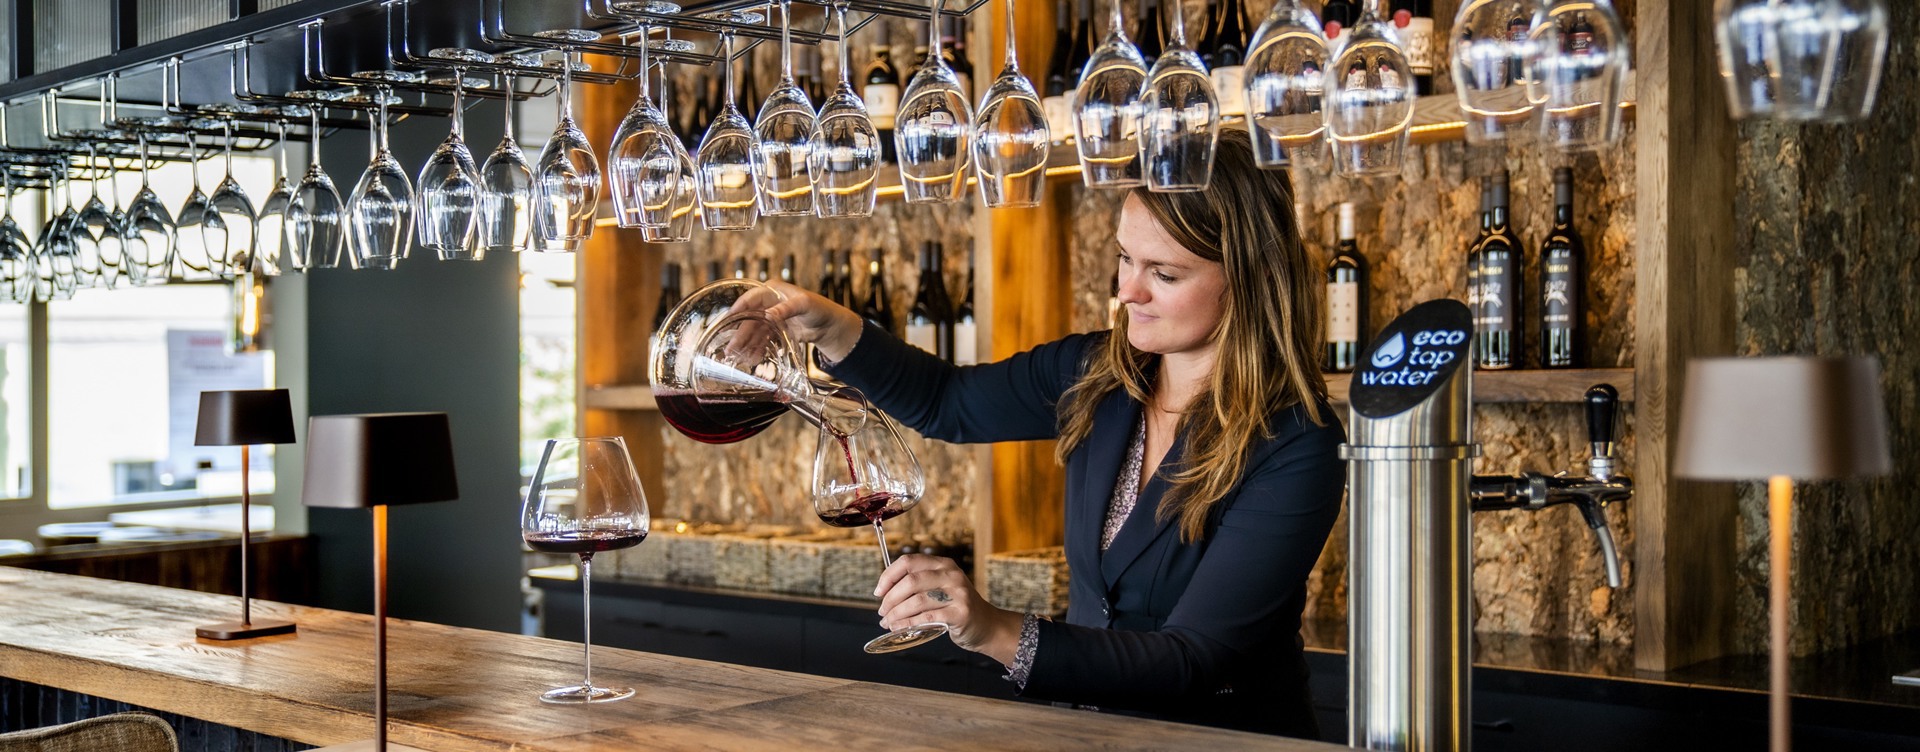 Genießen Sie prickelnde Weine und eine schöne Übernachtung
in dem Weinhotel der Niederlande